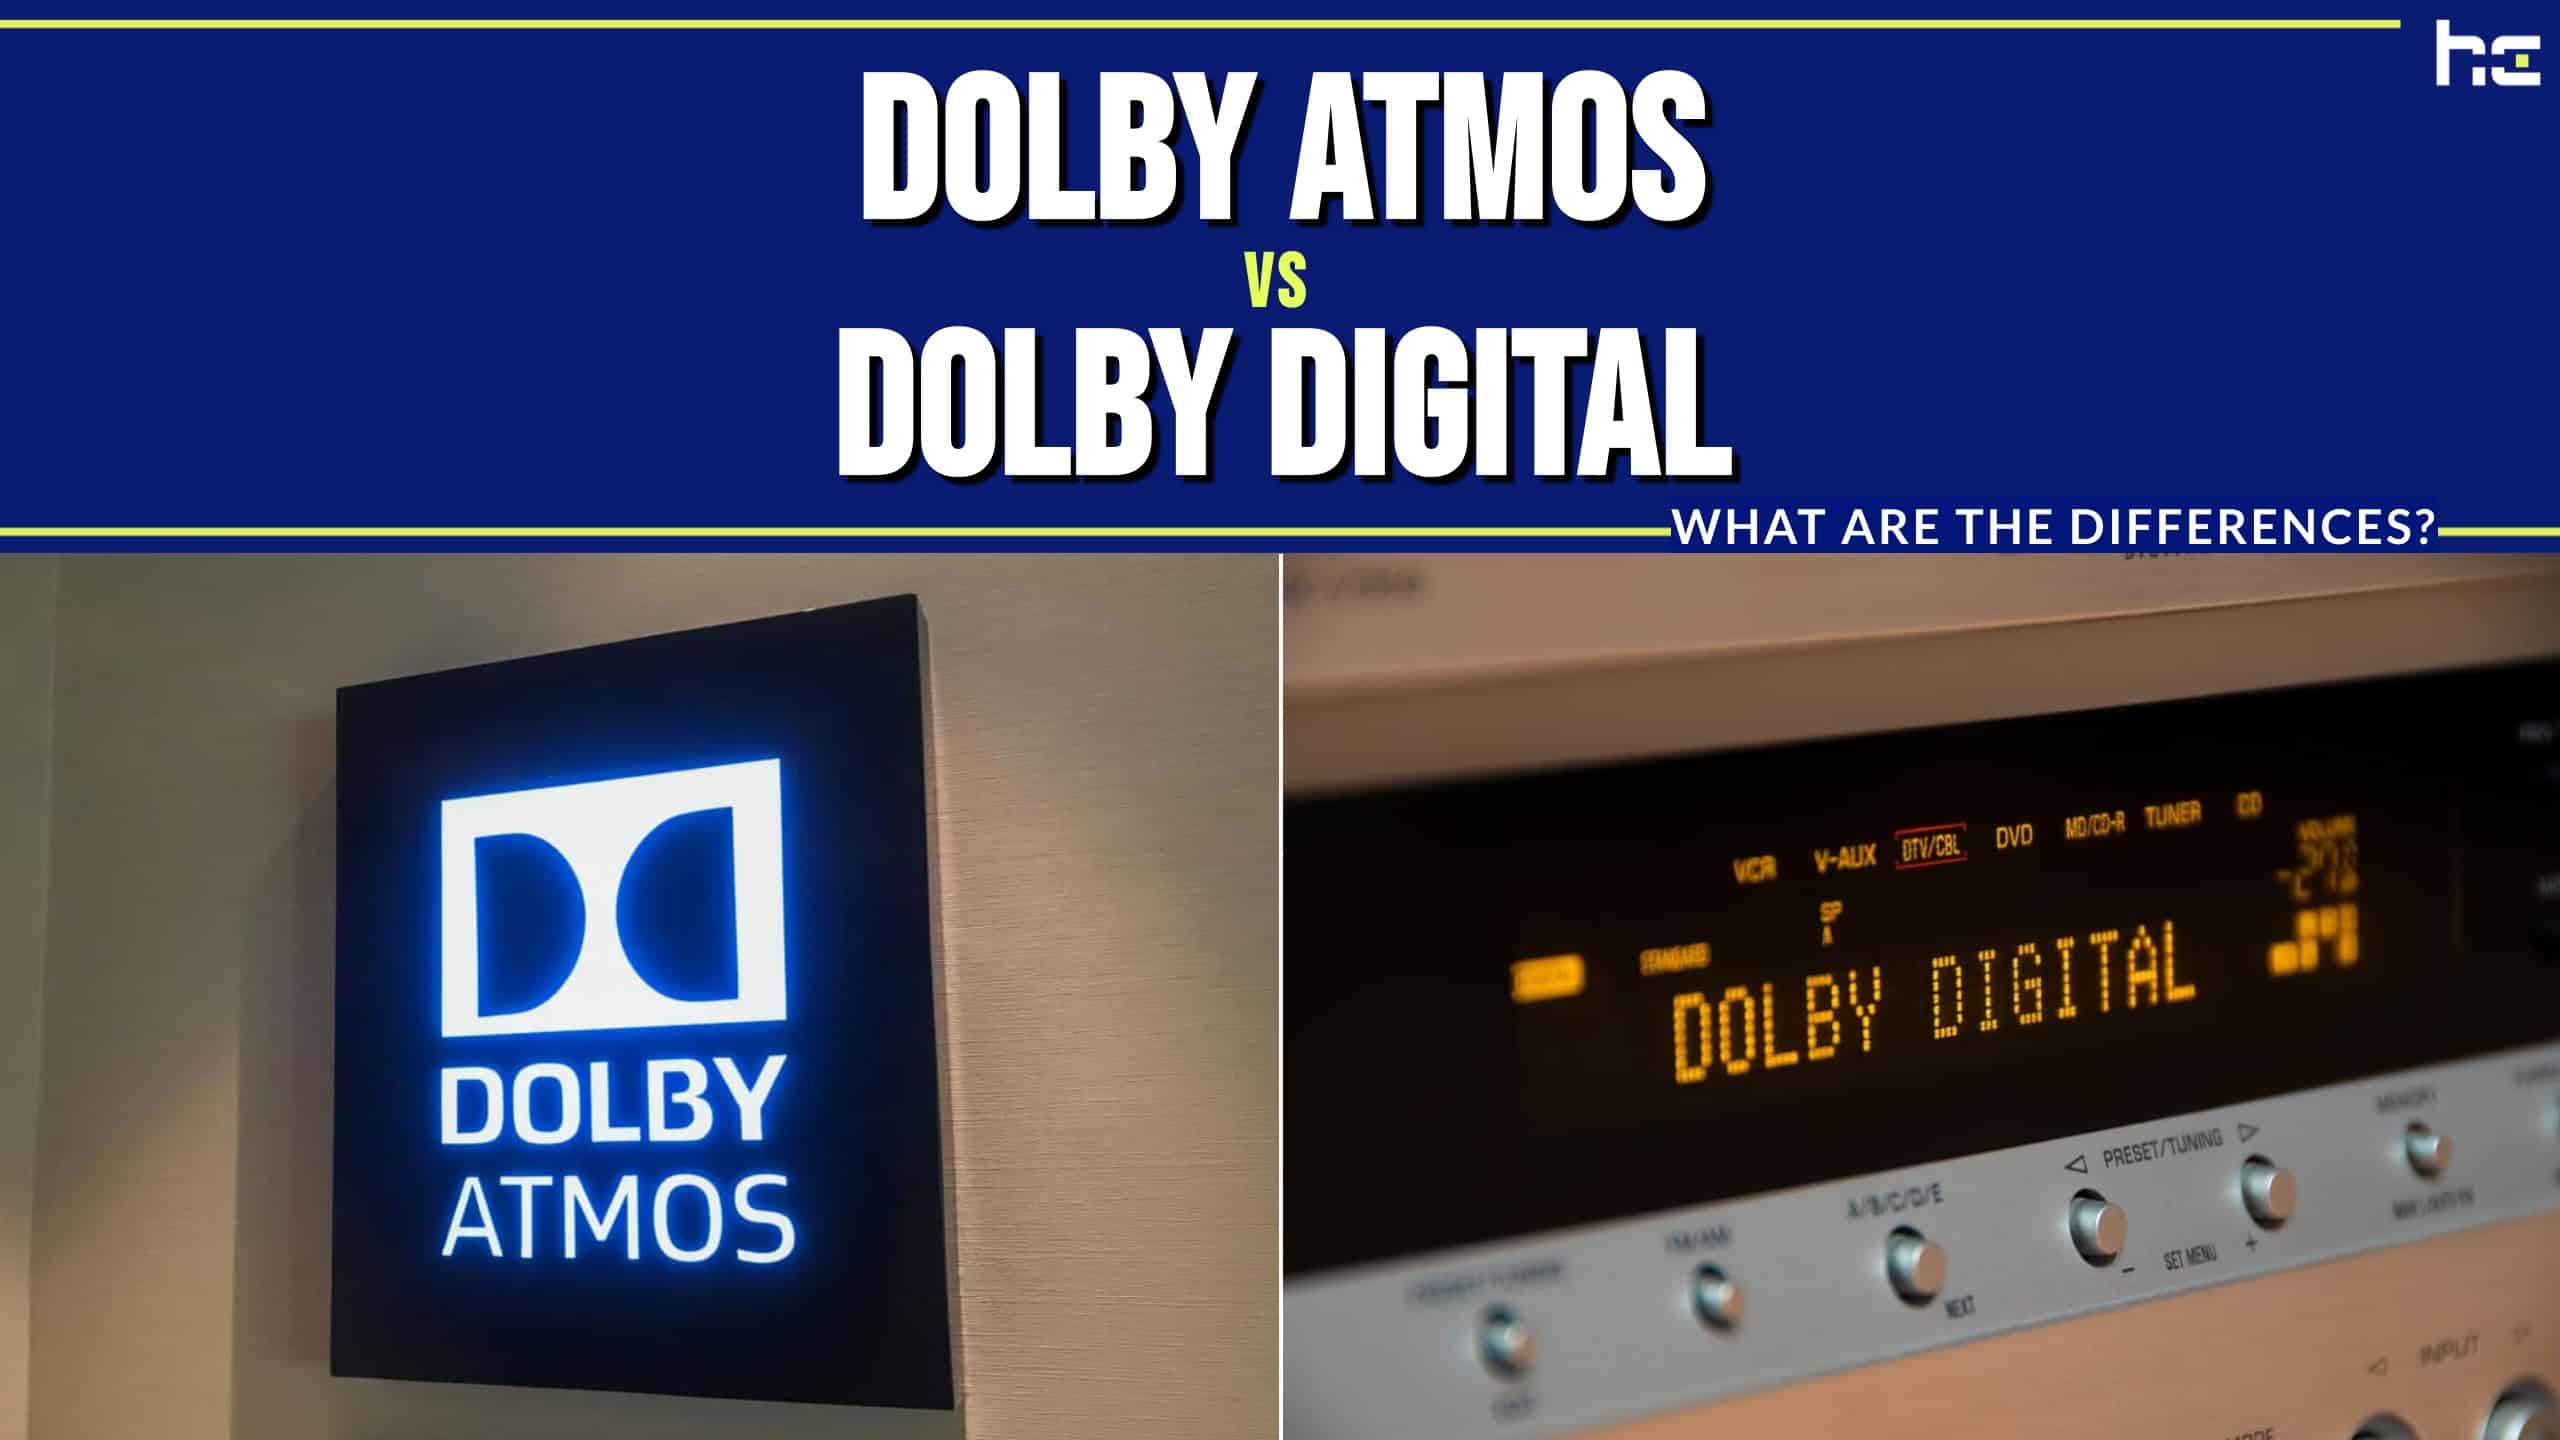 Dolby Atmos vs Dolby Digital